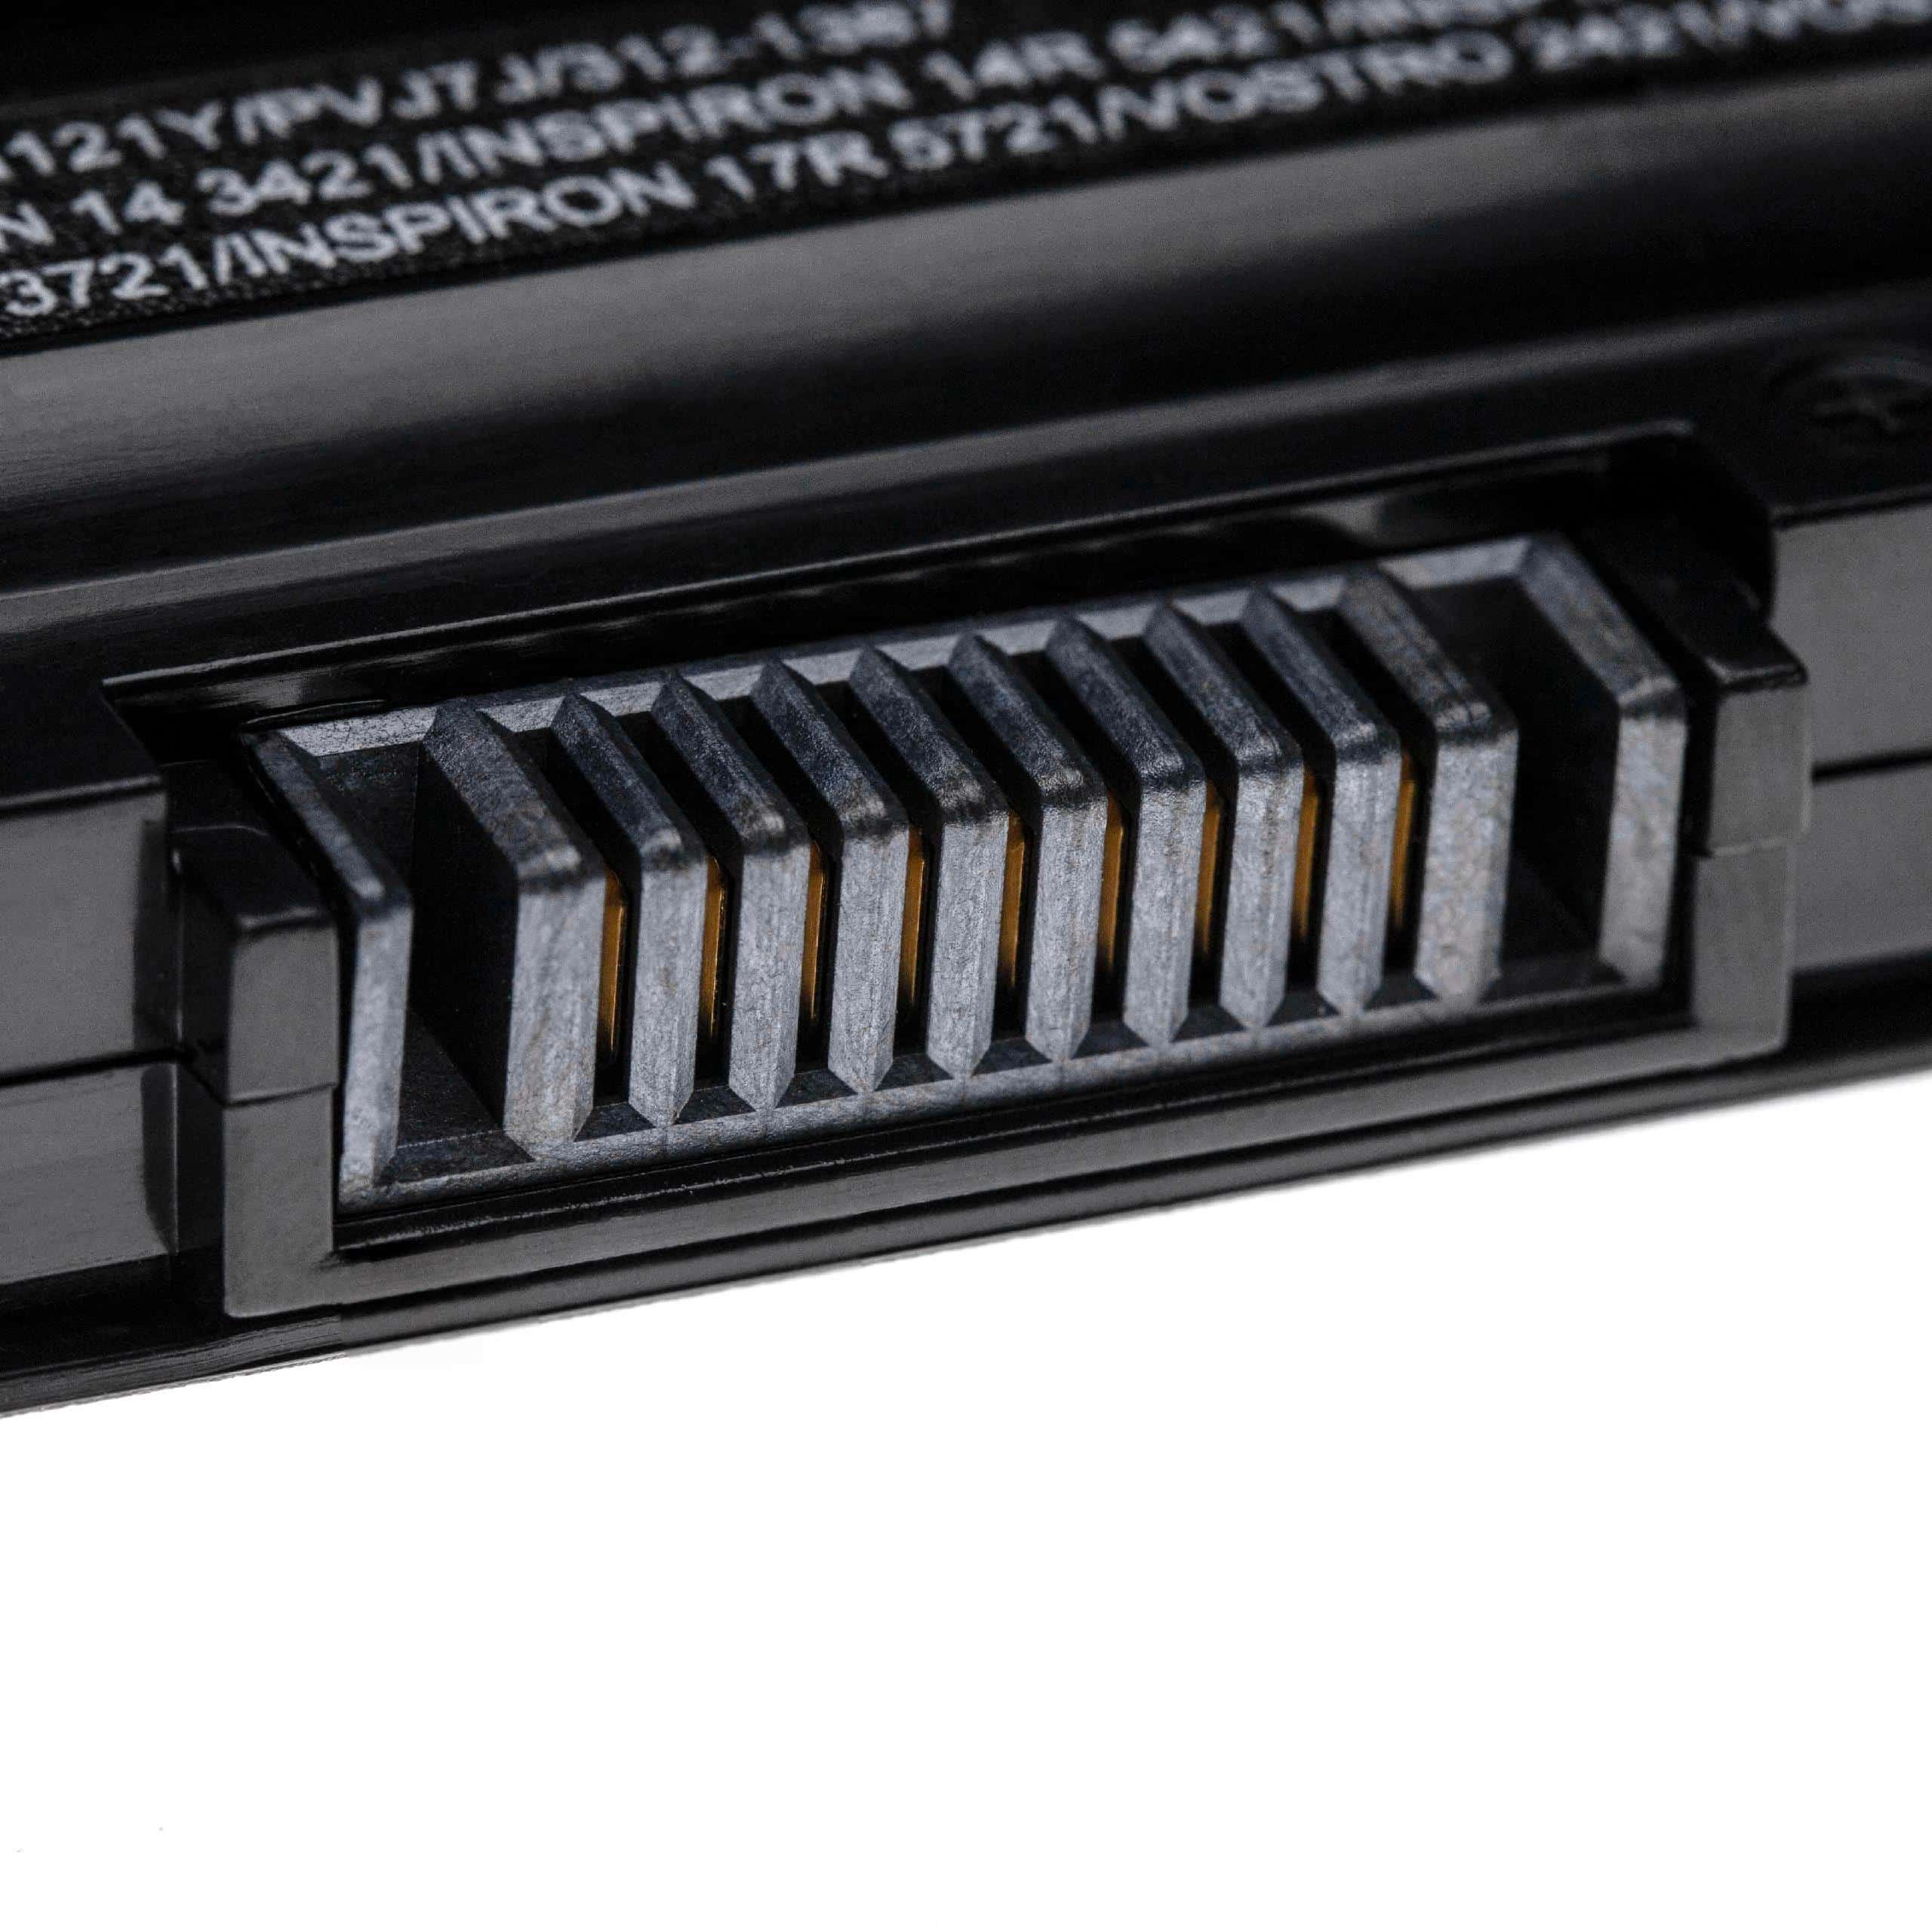 Akumulator do laptopa zamiennik Dell 312-1387, 24DRM, 0MF69, 312-1392, 312-1390 - 5200 mAh 11,1 V LiPo, czarny